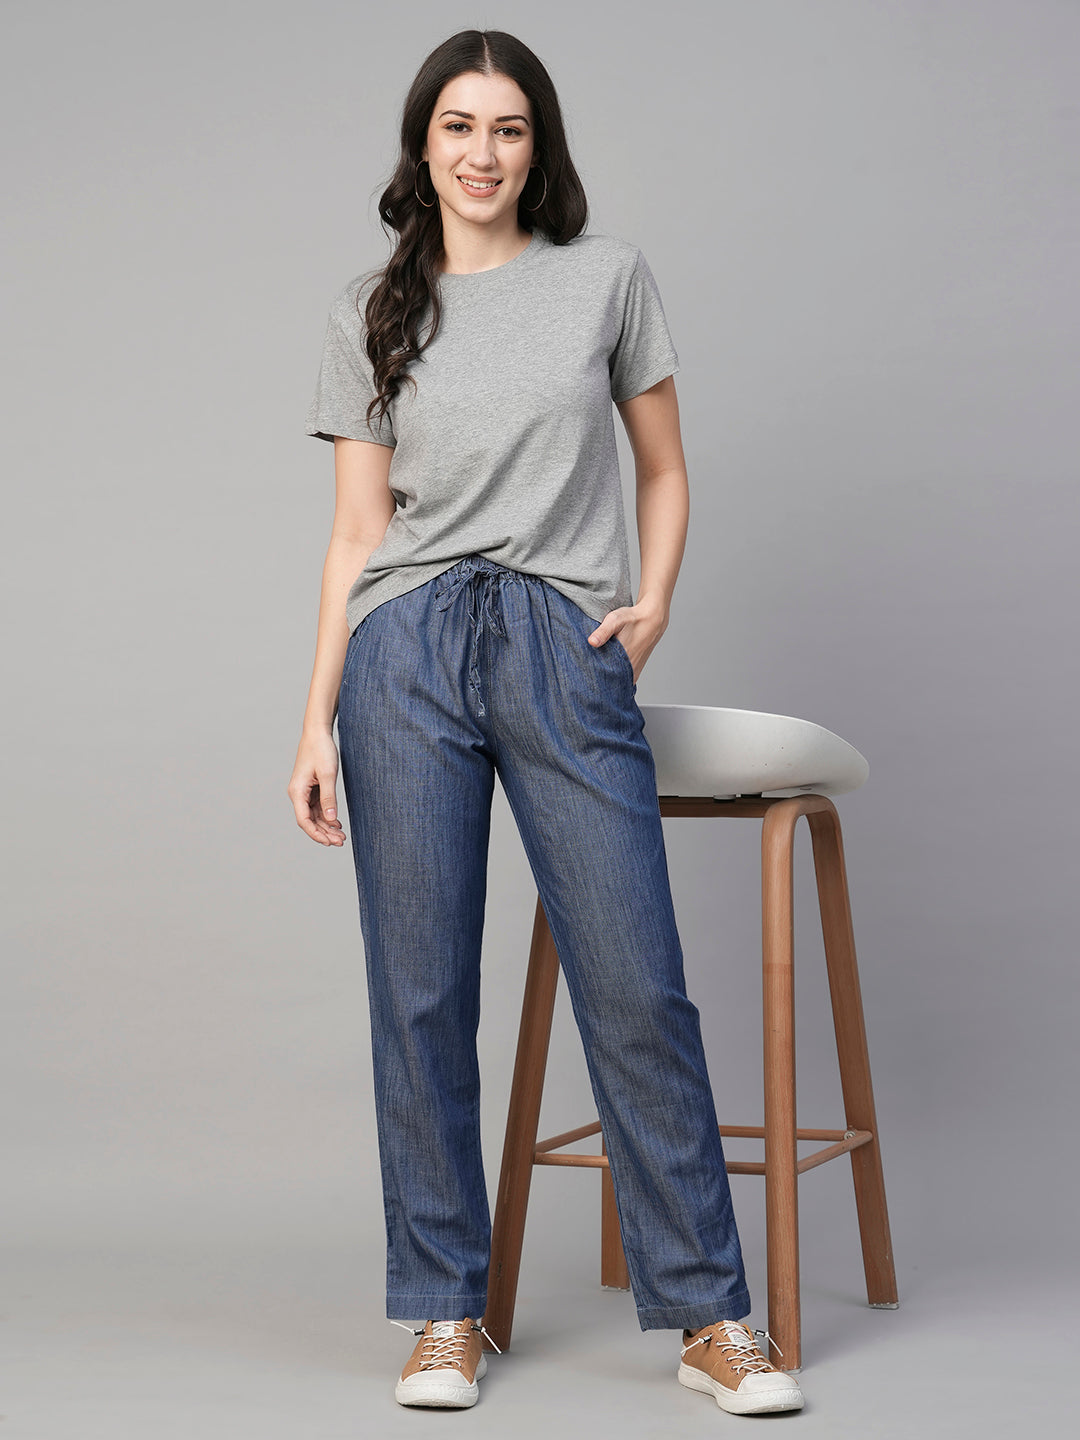 Women's Grey Melan Cotton  Regular Fit Tshirt